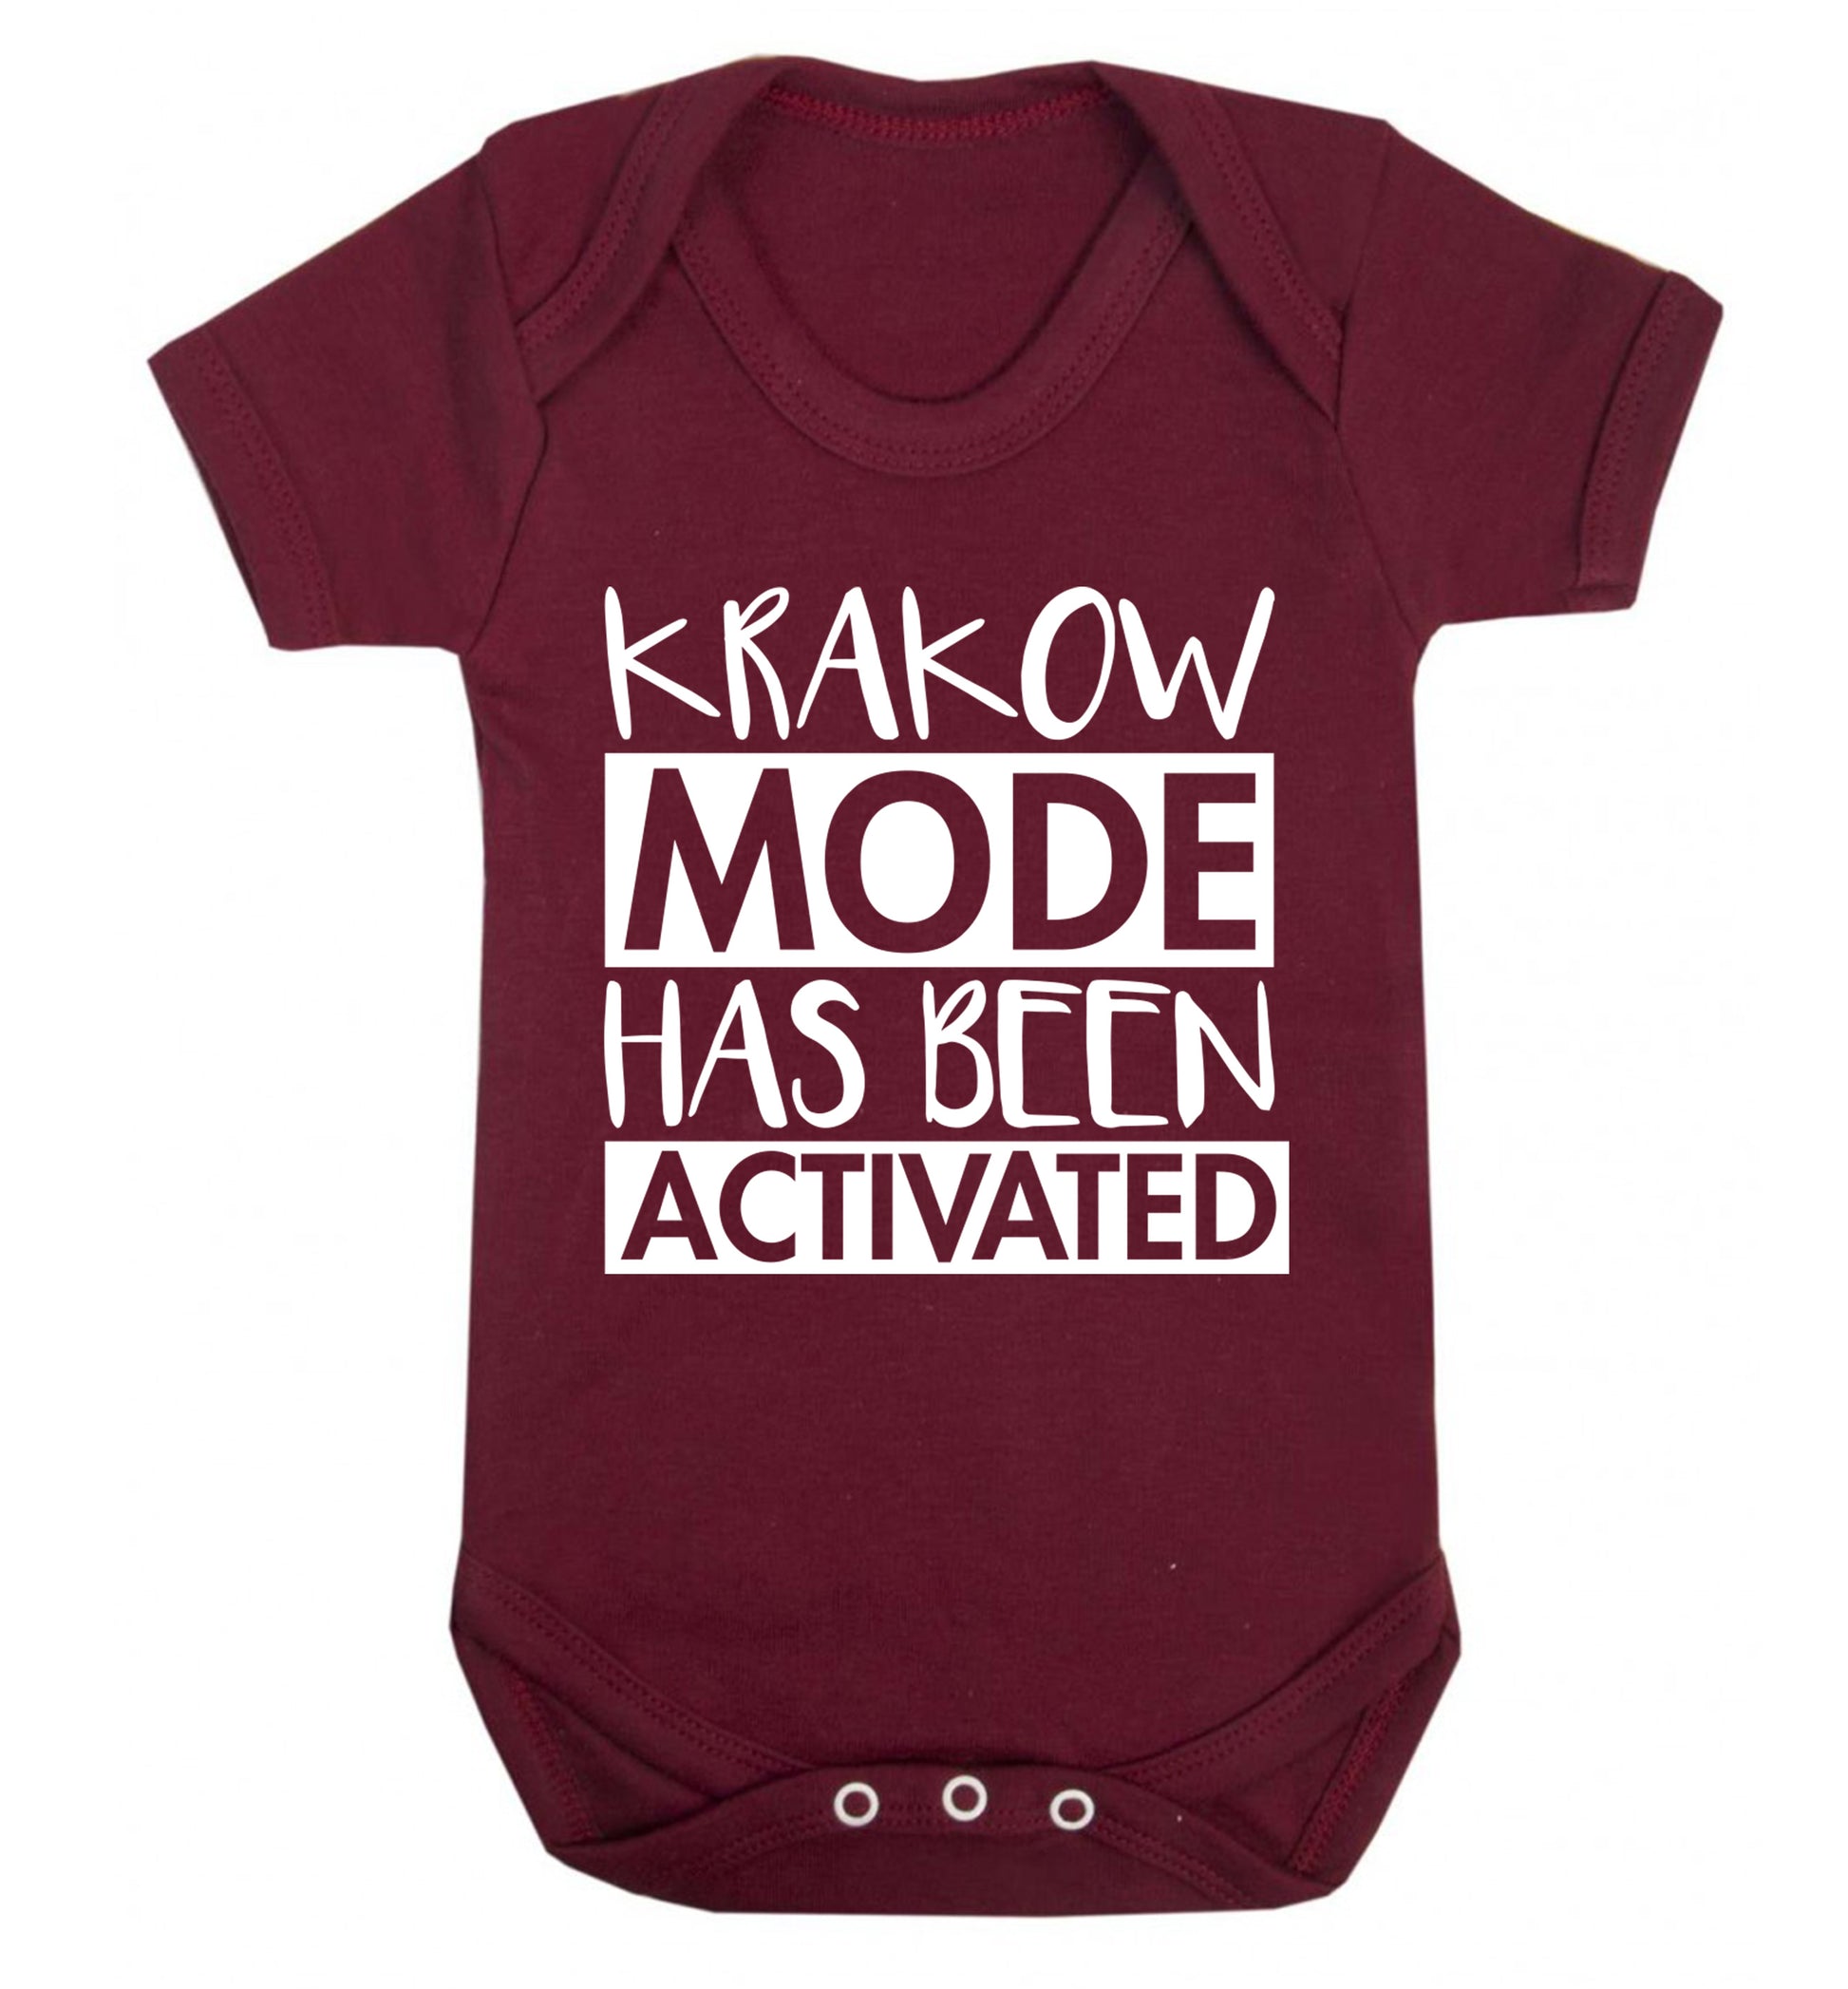 Krakow mode has been activated Baby Vest maroon 18-24 months